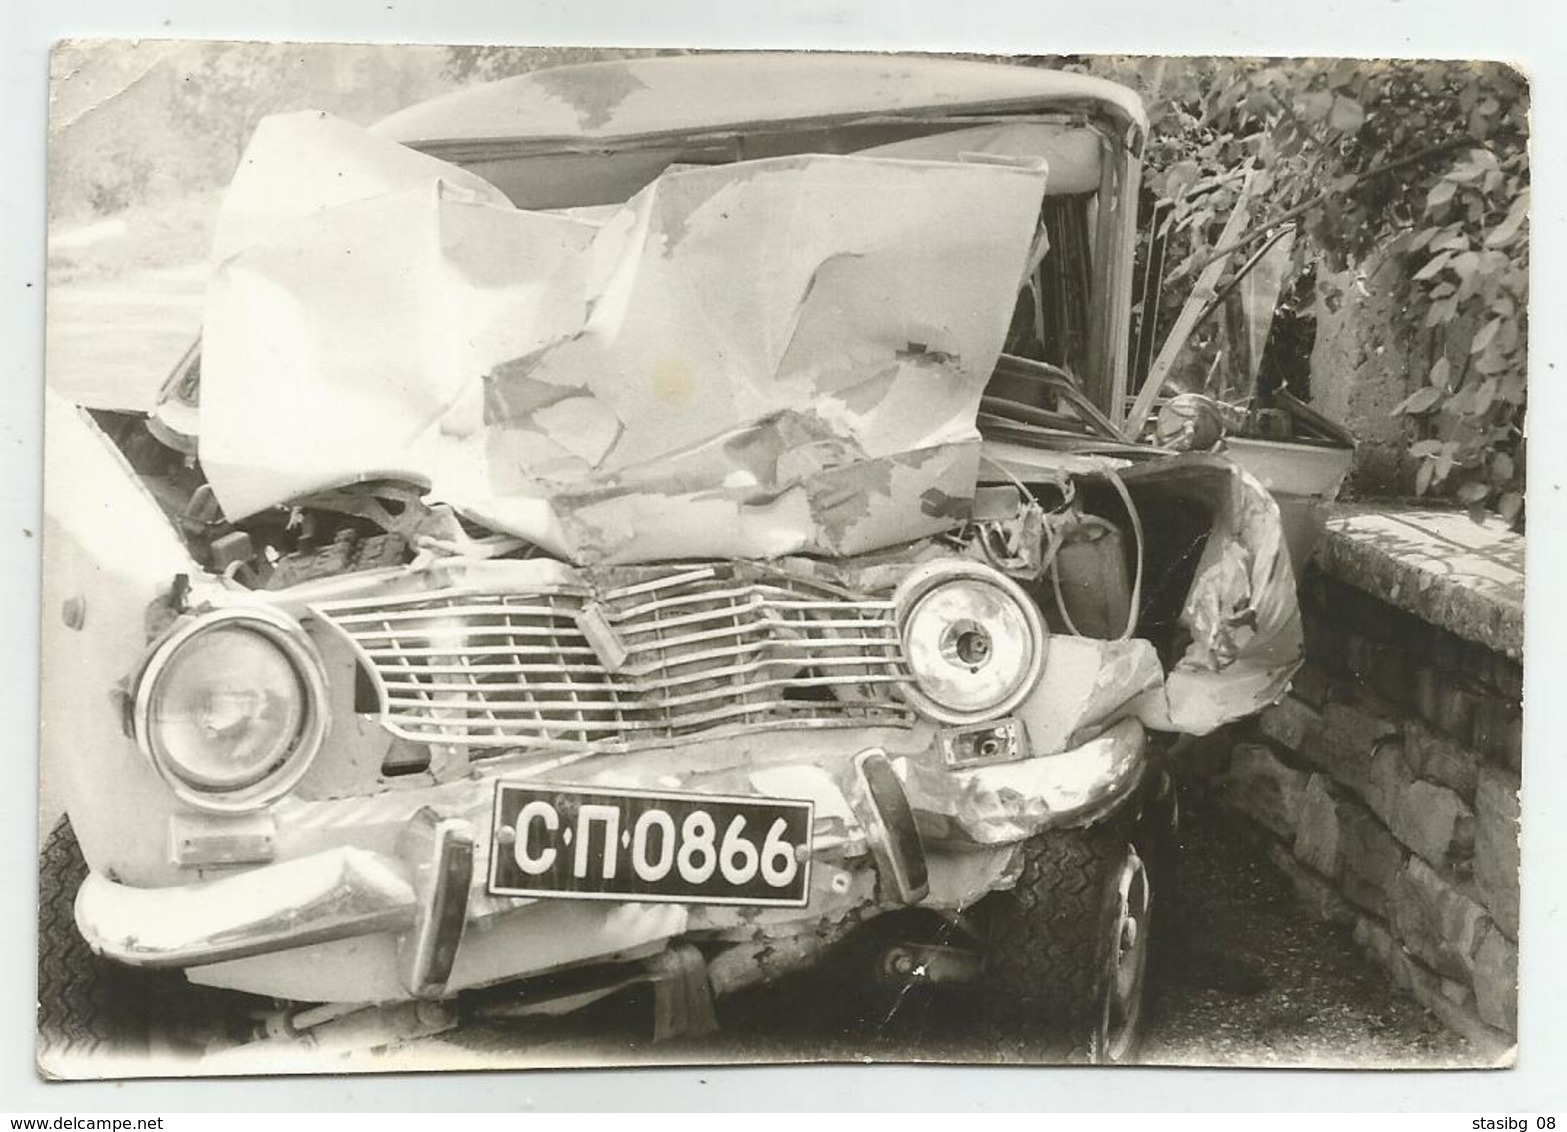 Crashed, Crushed Car Uy99-116 - Automobili